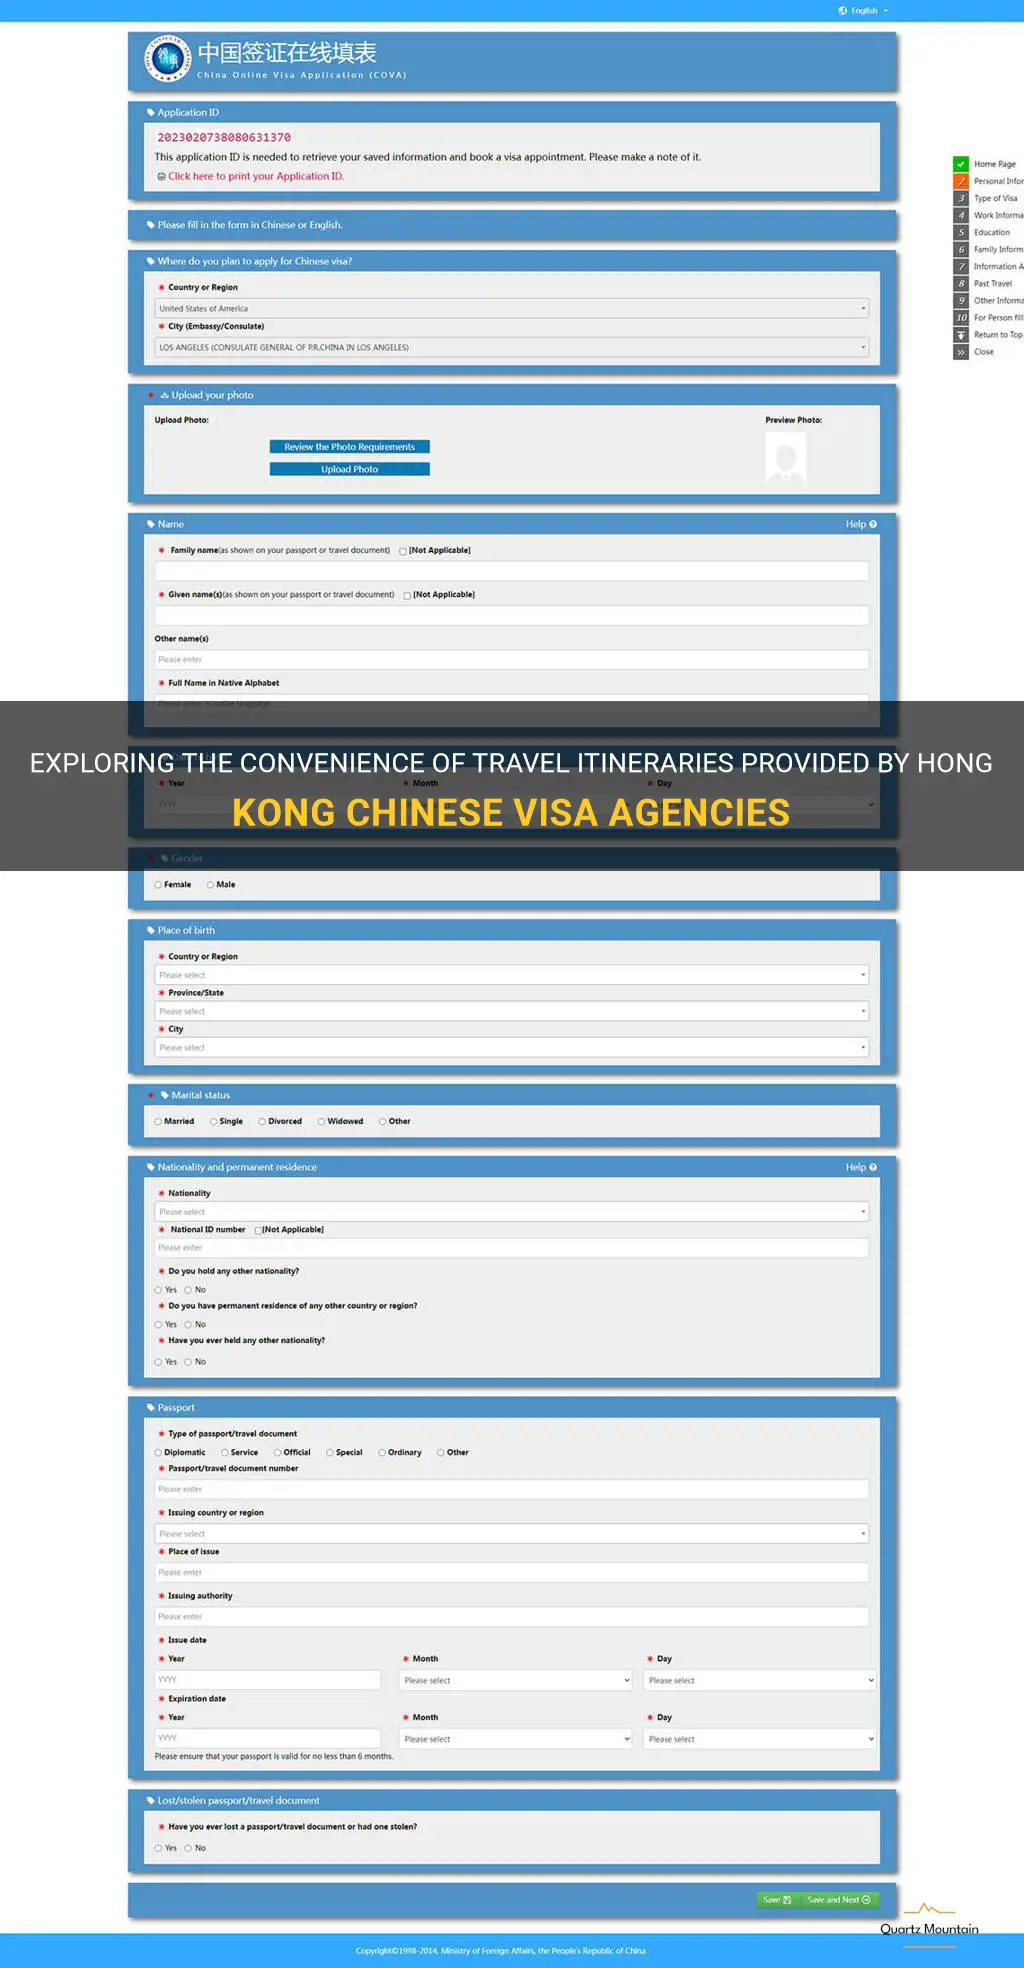 do hong kong chinese visa agencies provide travel itineraries